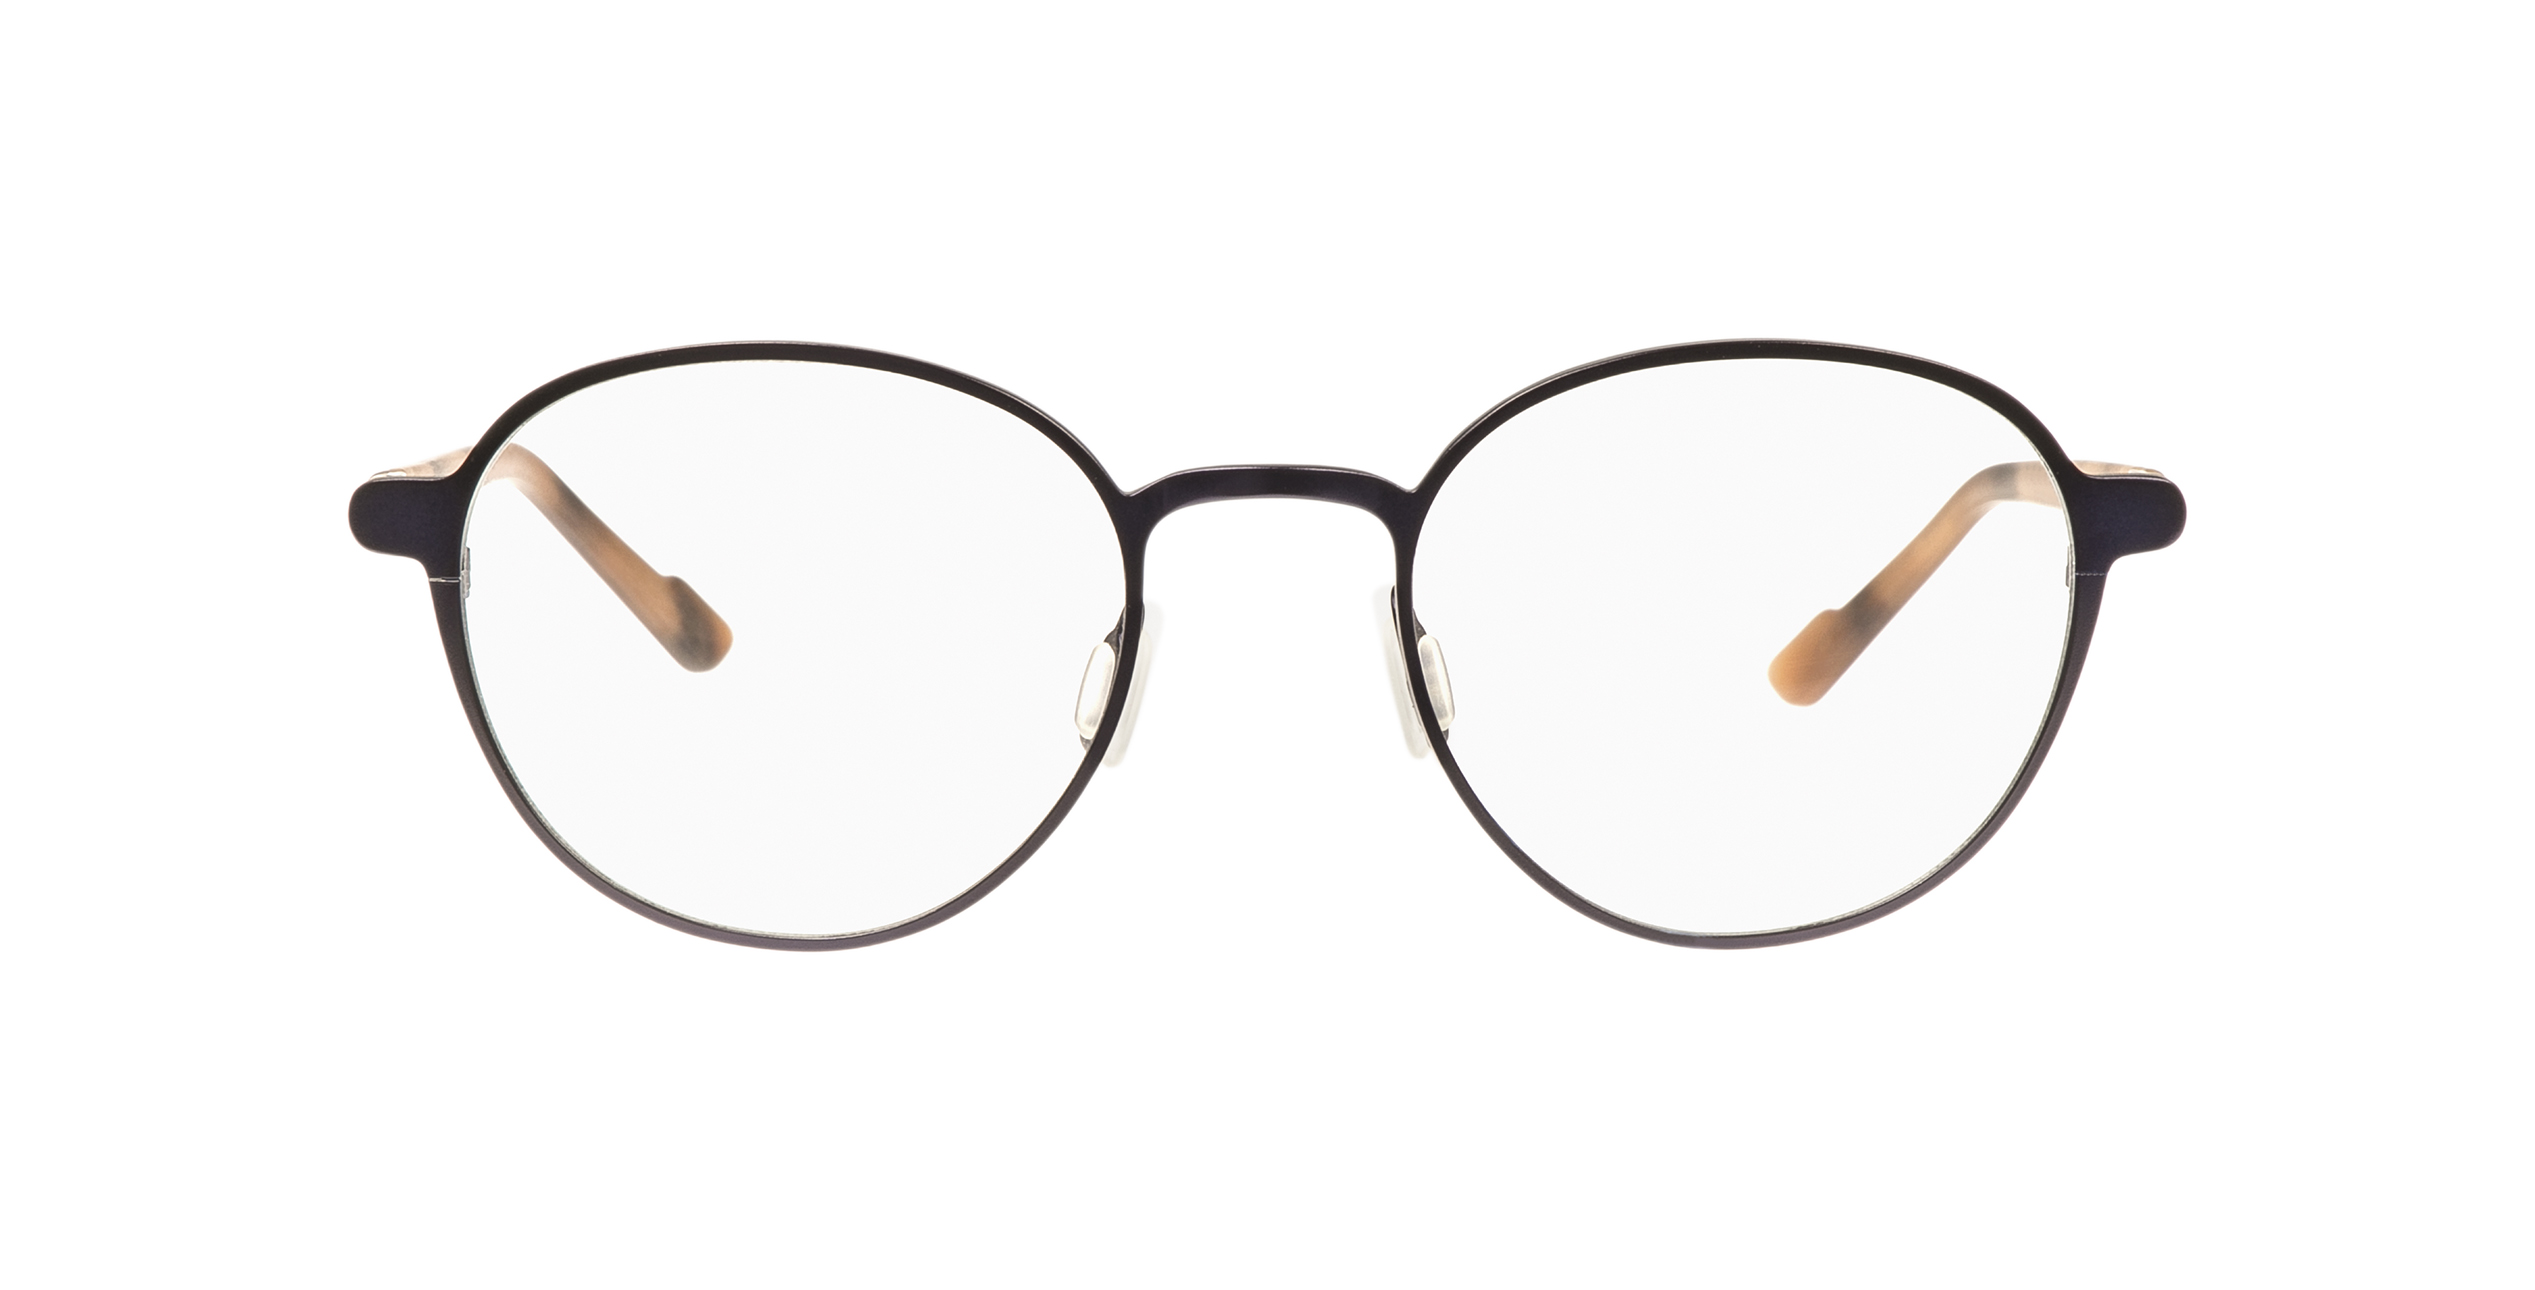 Baldessarini brille - Unser Vergleichssieger 